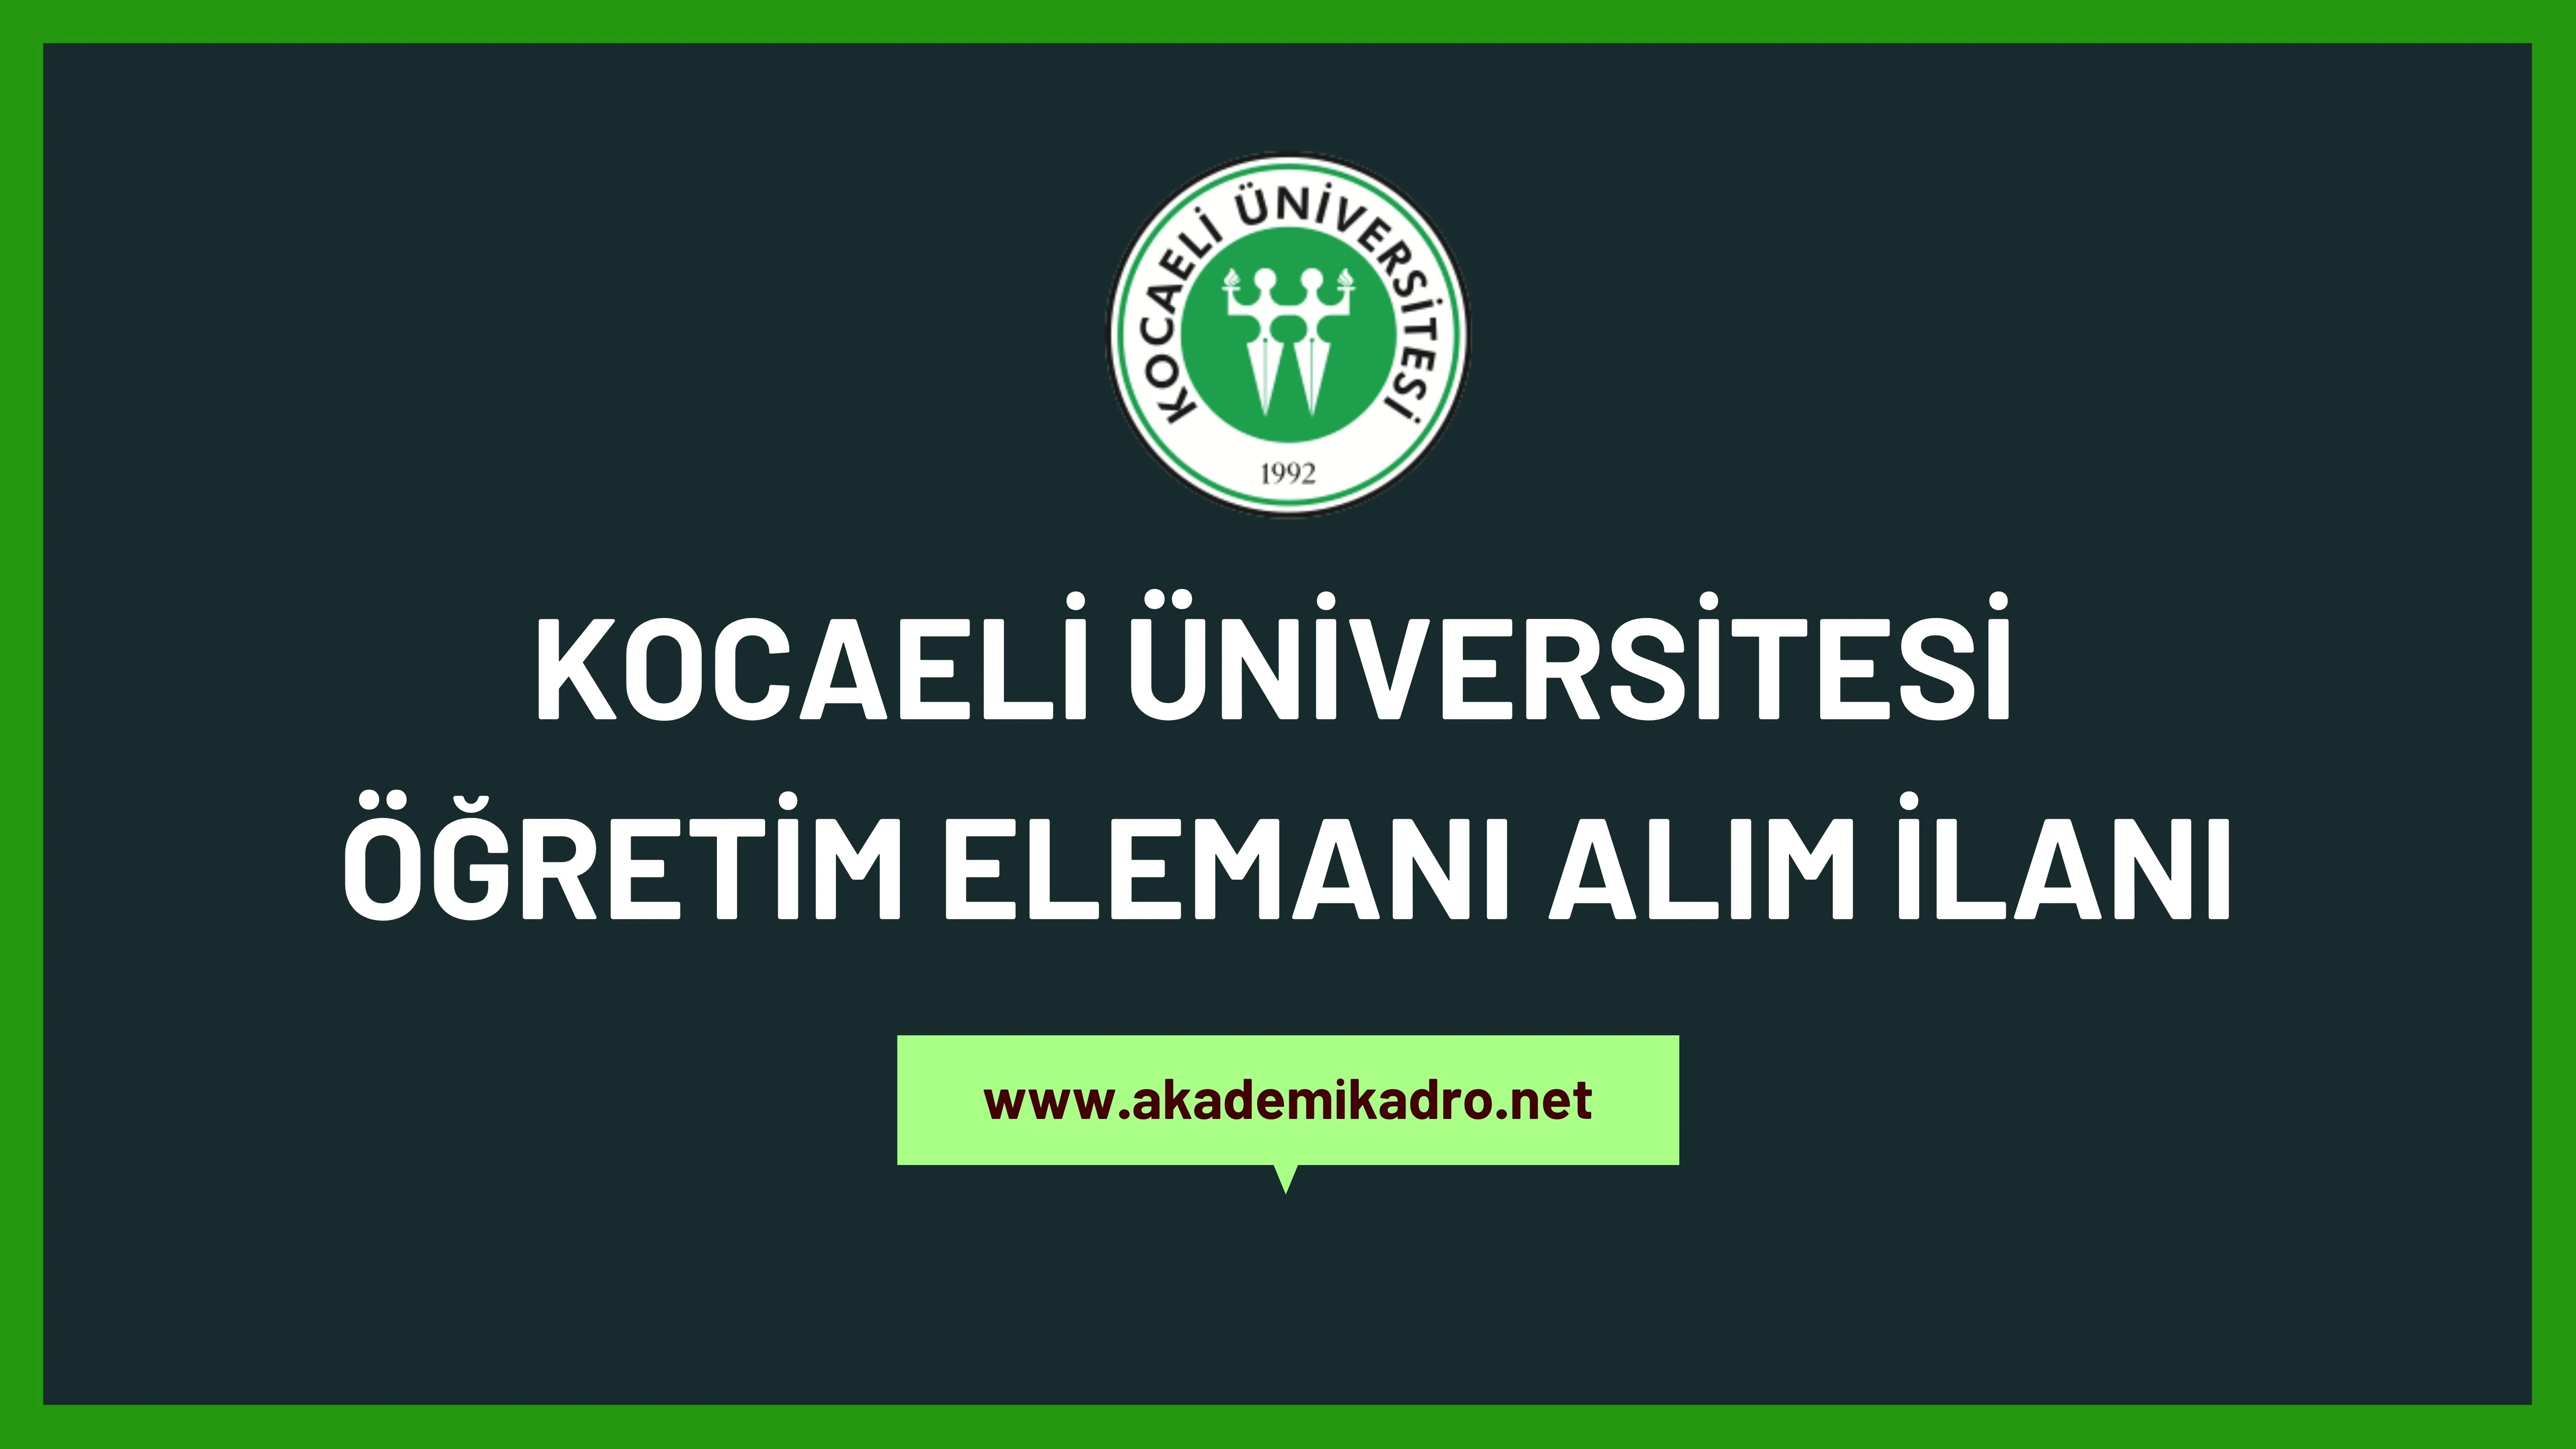 Kocaeli Üniversitesi 2 Öğretim görevlisi ve birçok alandan 40 akademik personel alacak.Son başvuru tarihi 21 Kasım 2022.